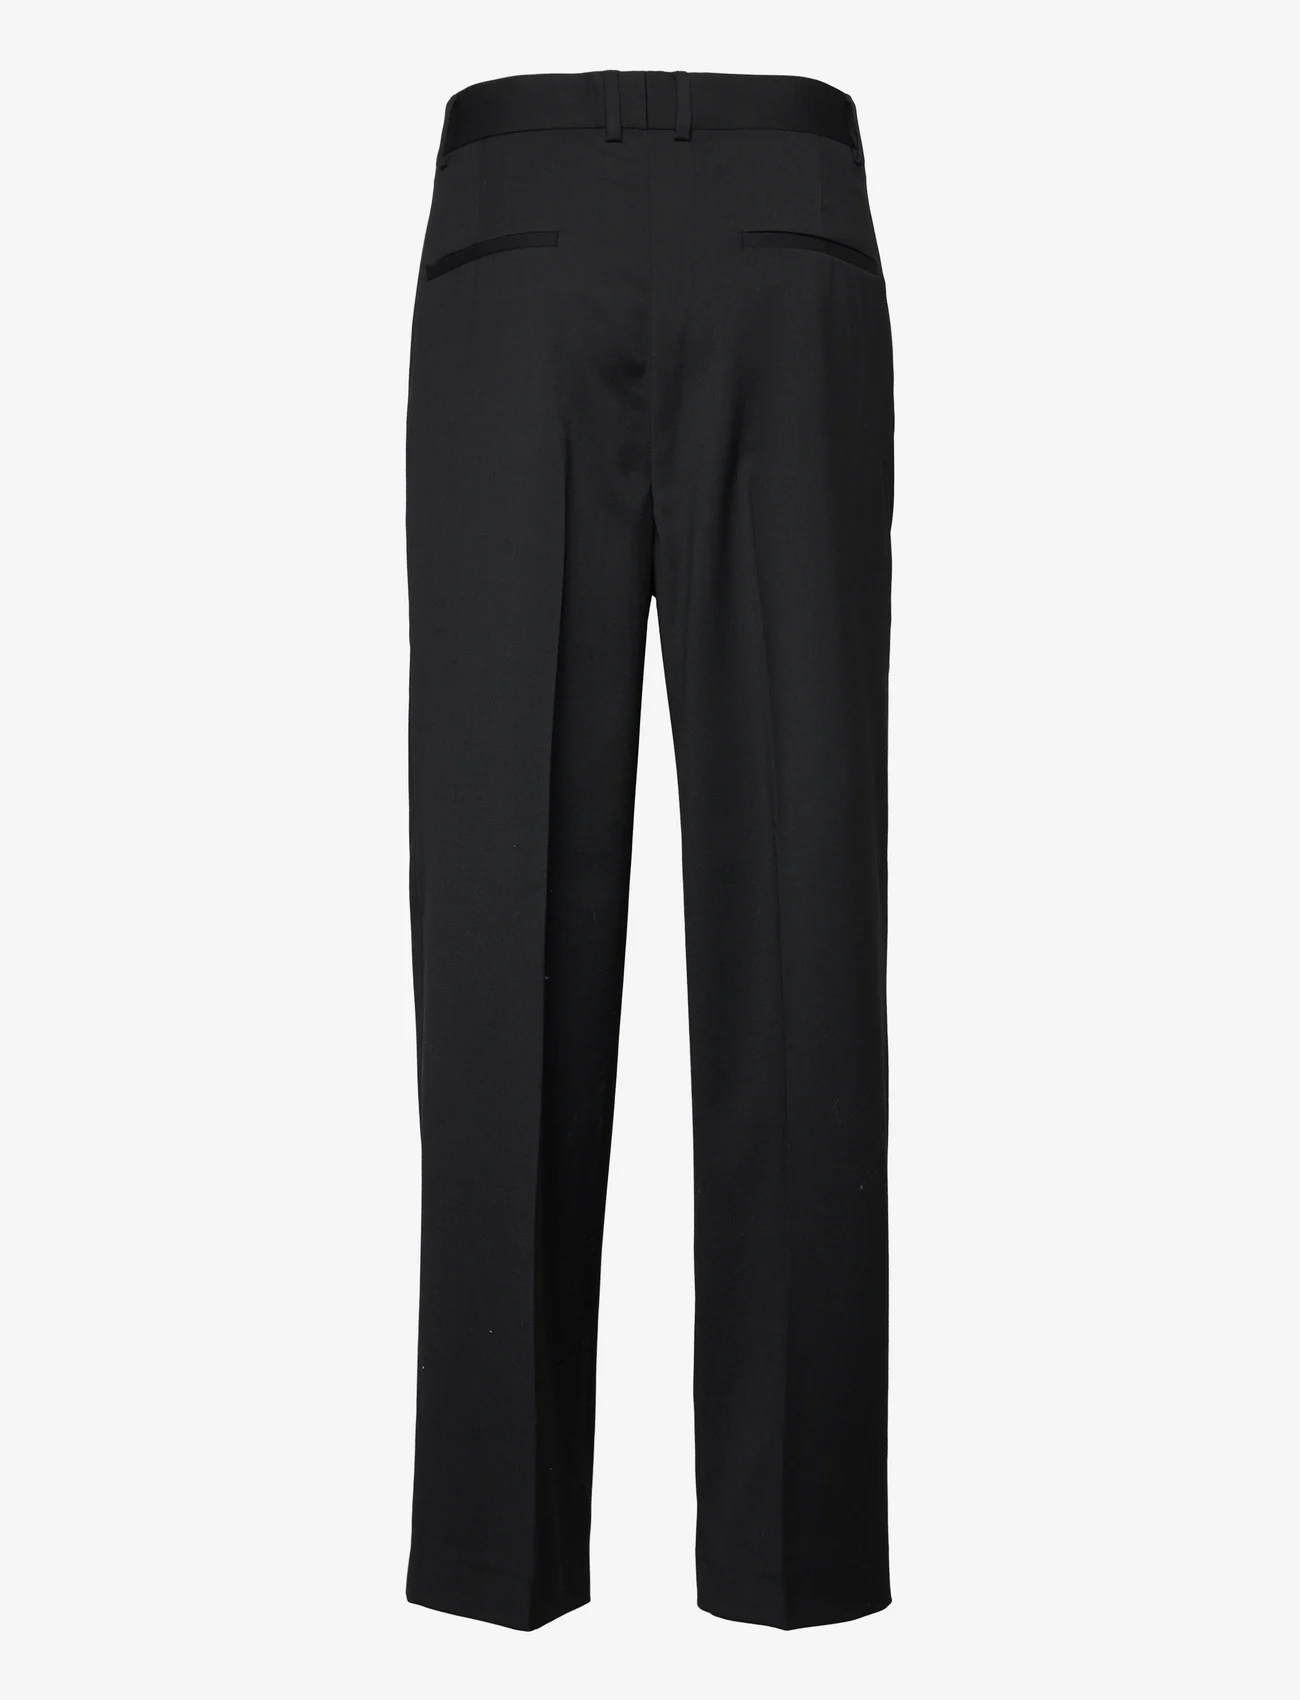 HAN Kjøbenhavn - Boxy Suit Pants - black - 1